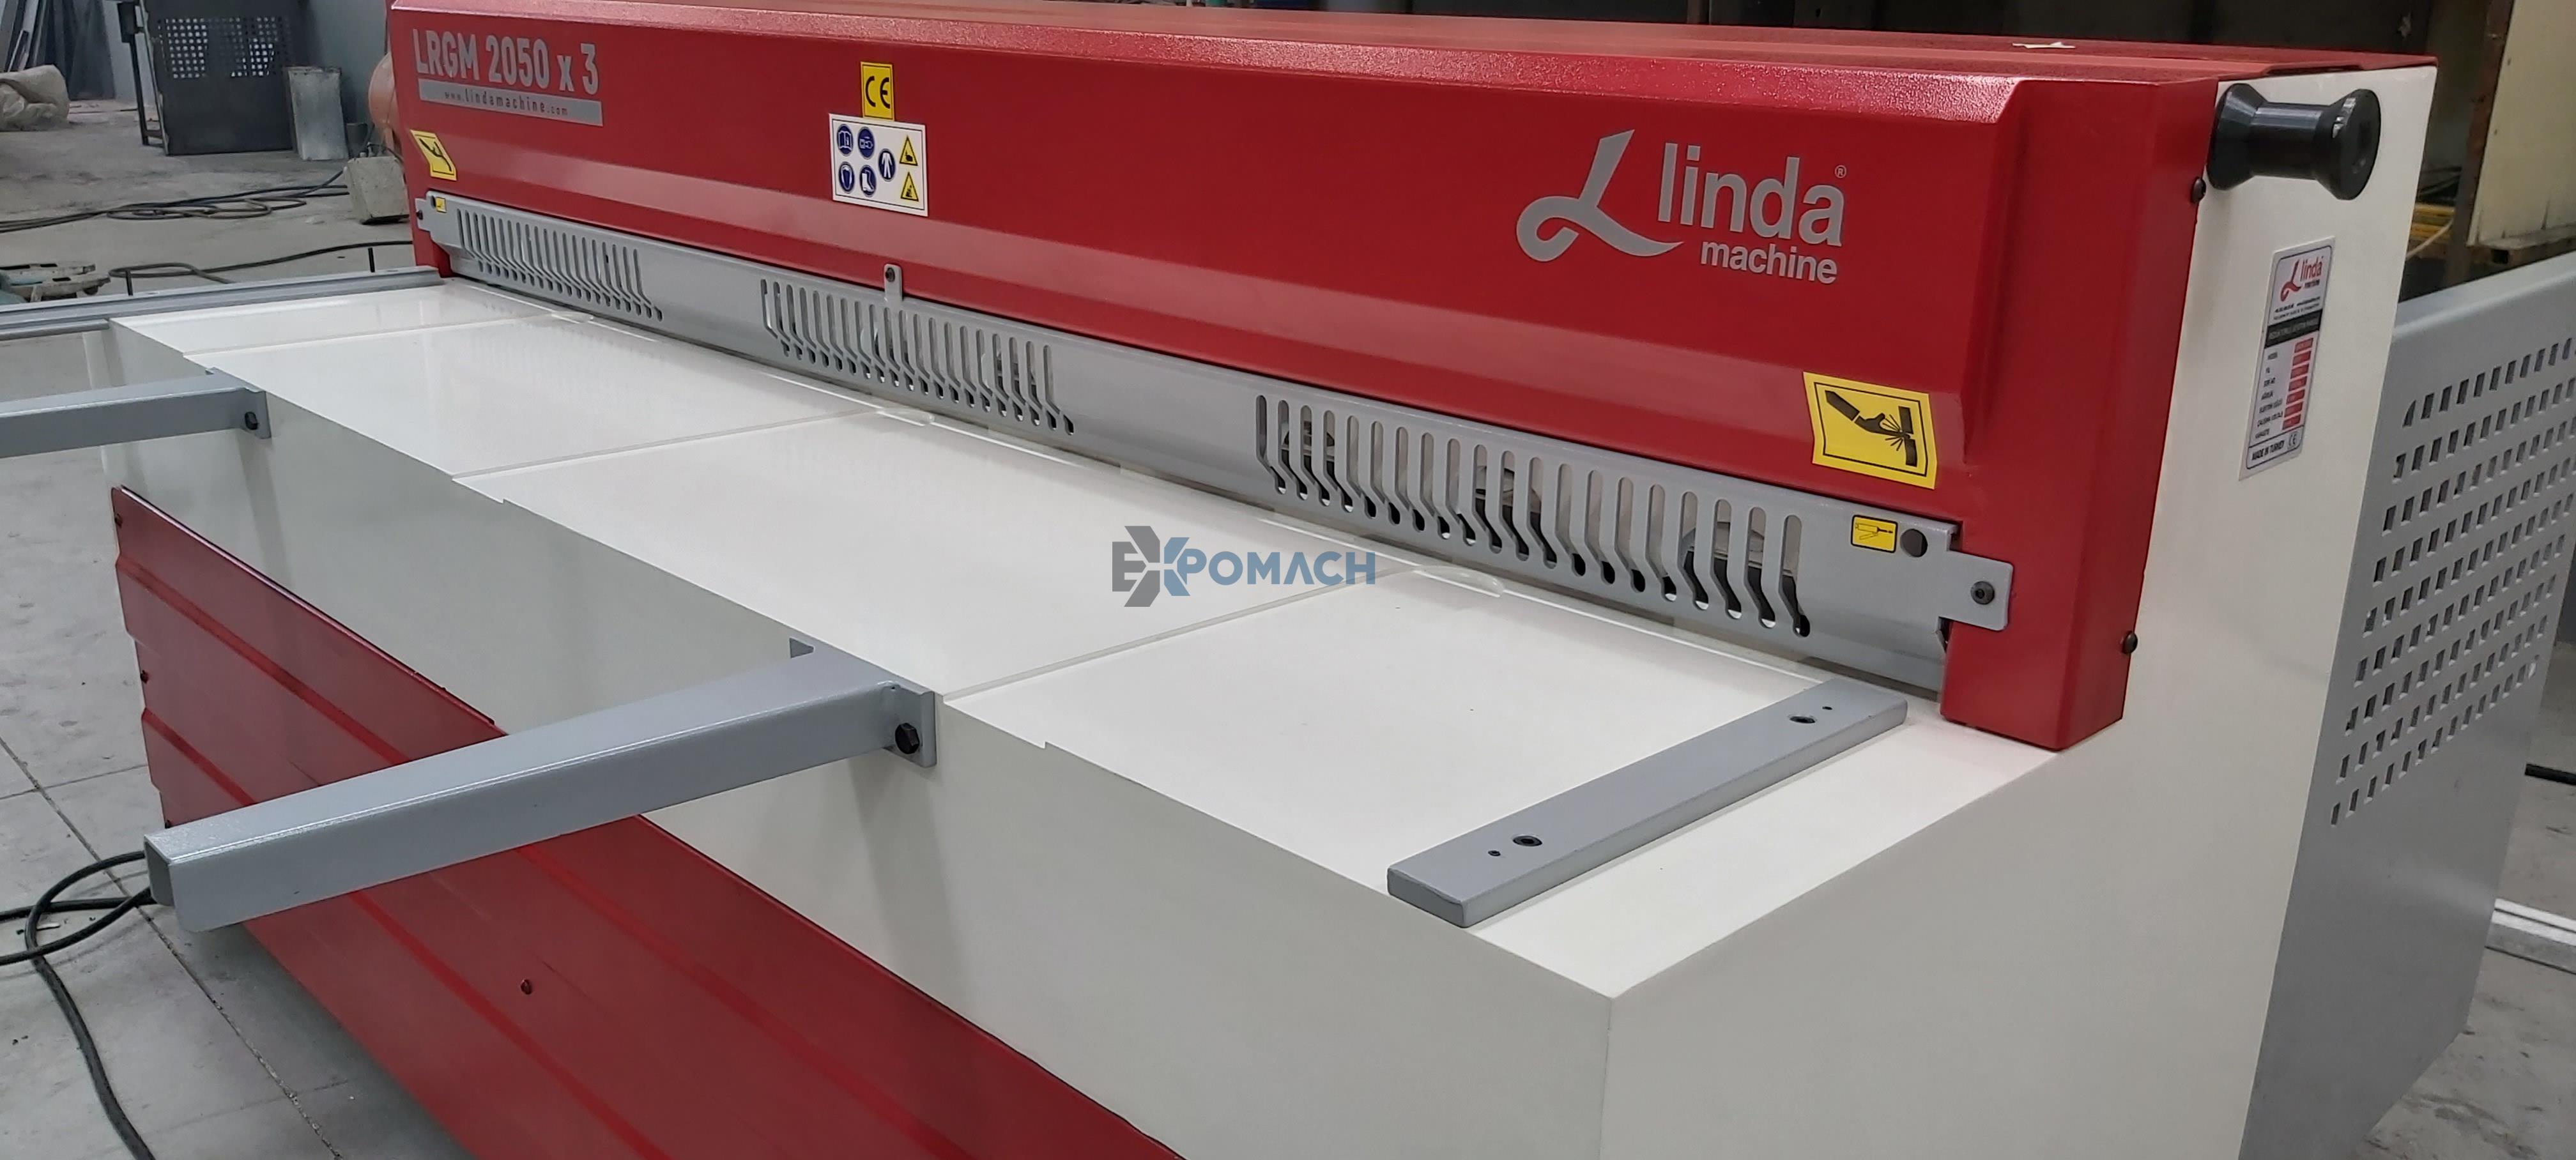 LRGM 2050 x 3mm Linda Machine Guillotine Shear